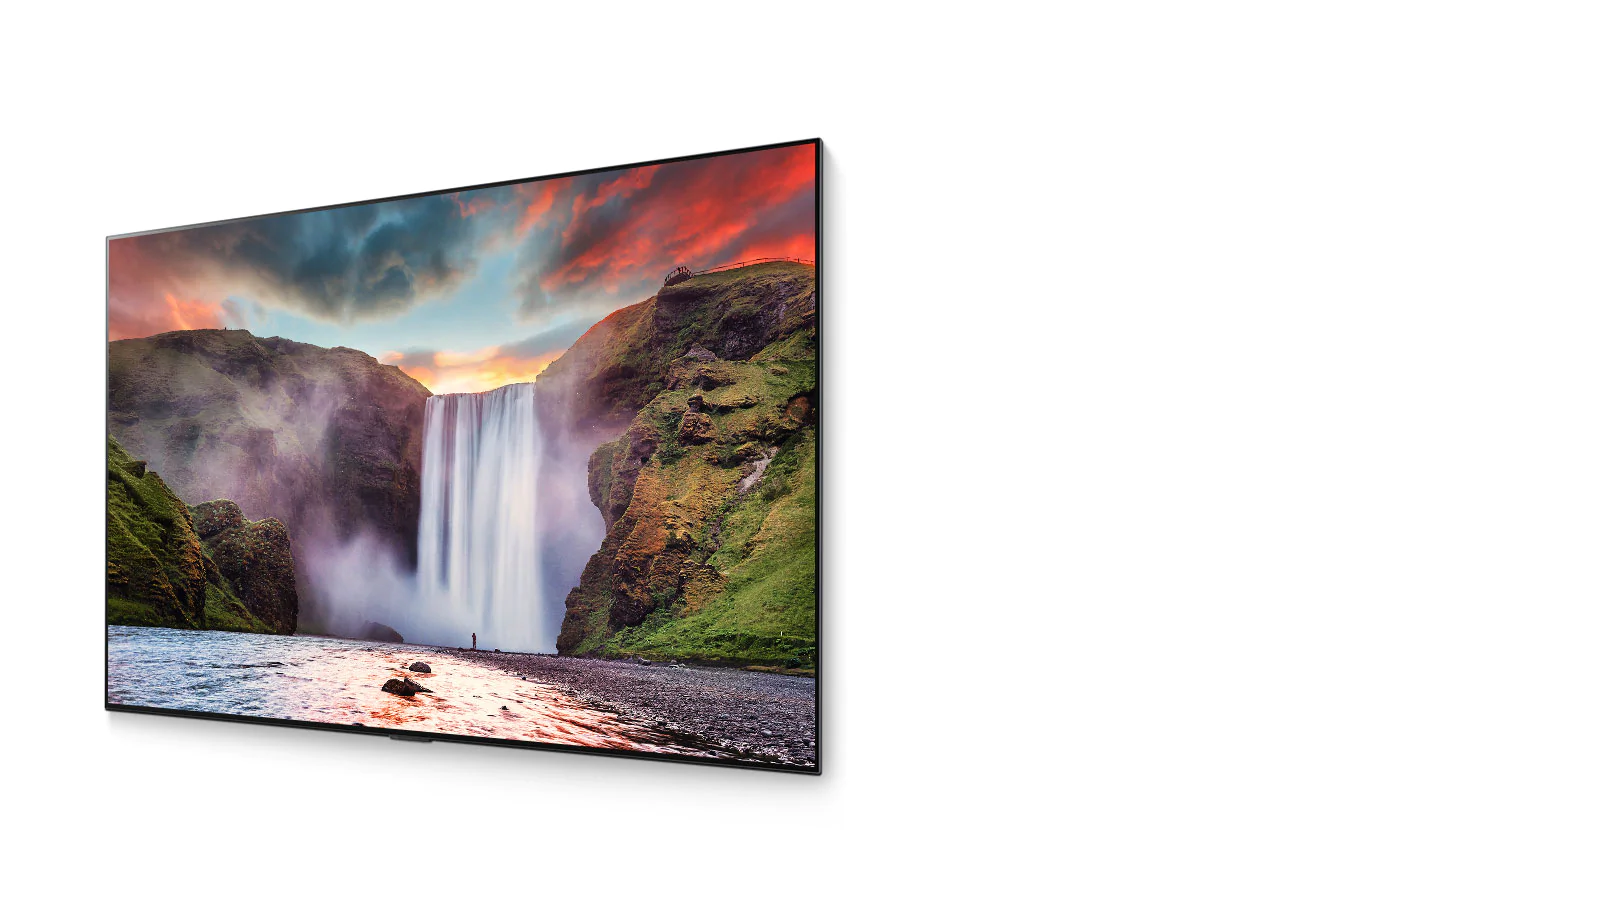 מפל מרהיב עם נוף יפהפה המוצג בטלוויזיה OLED (קרא את הסרטון)